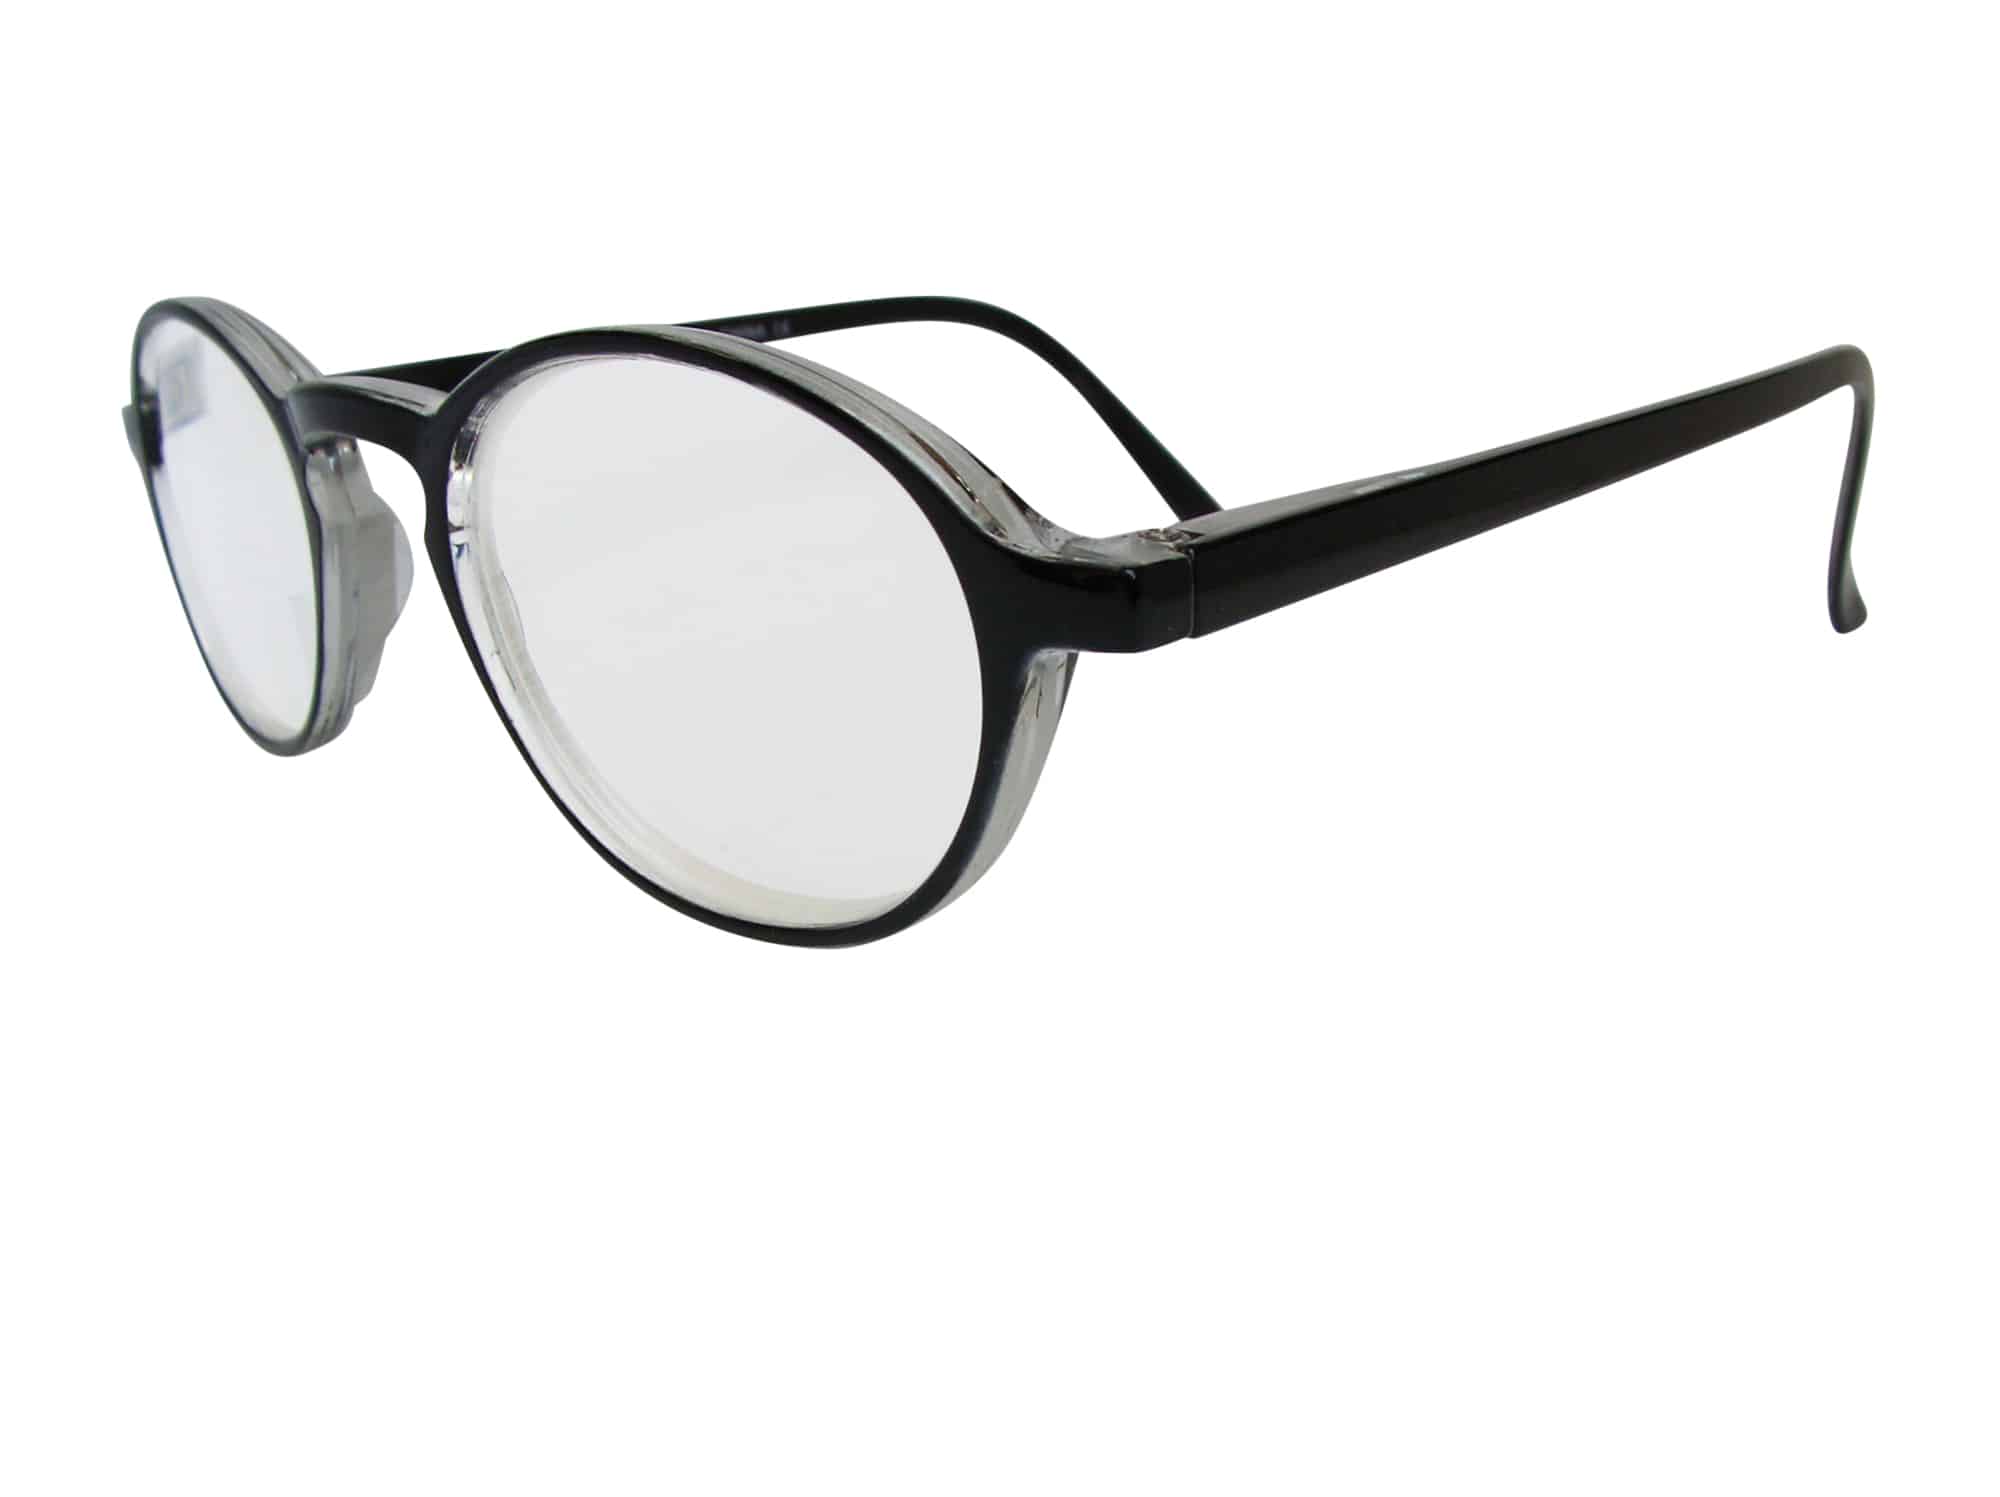 Lennon Extra Strength Reading Glasses in Black